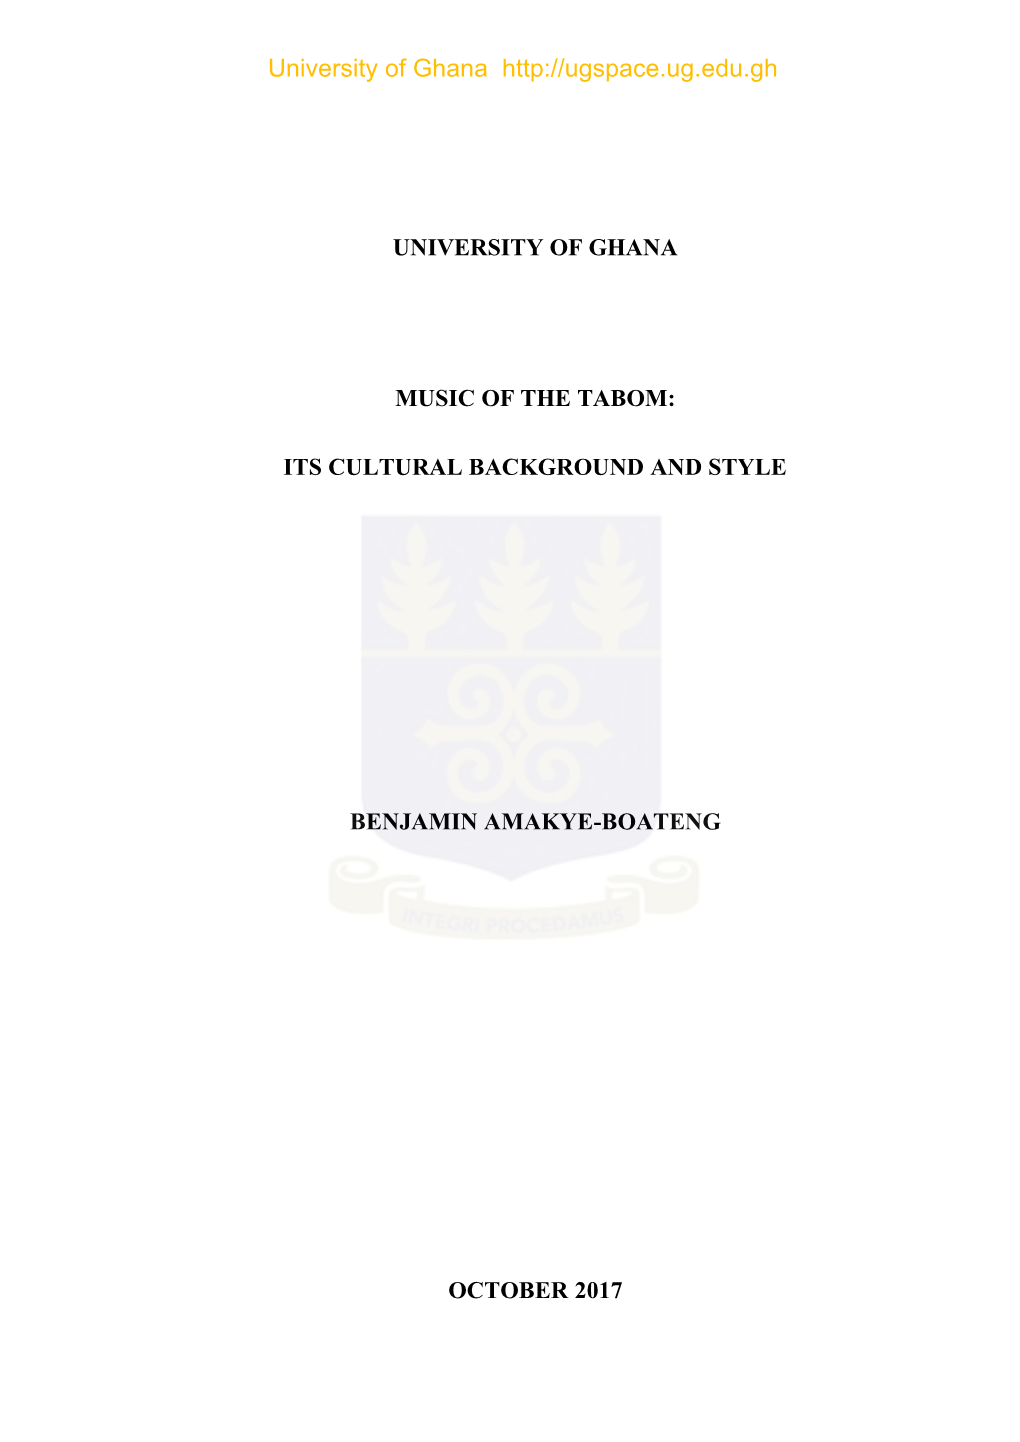 University of Ghana Music of the Tabom